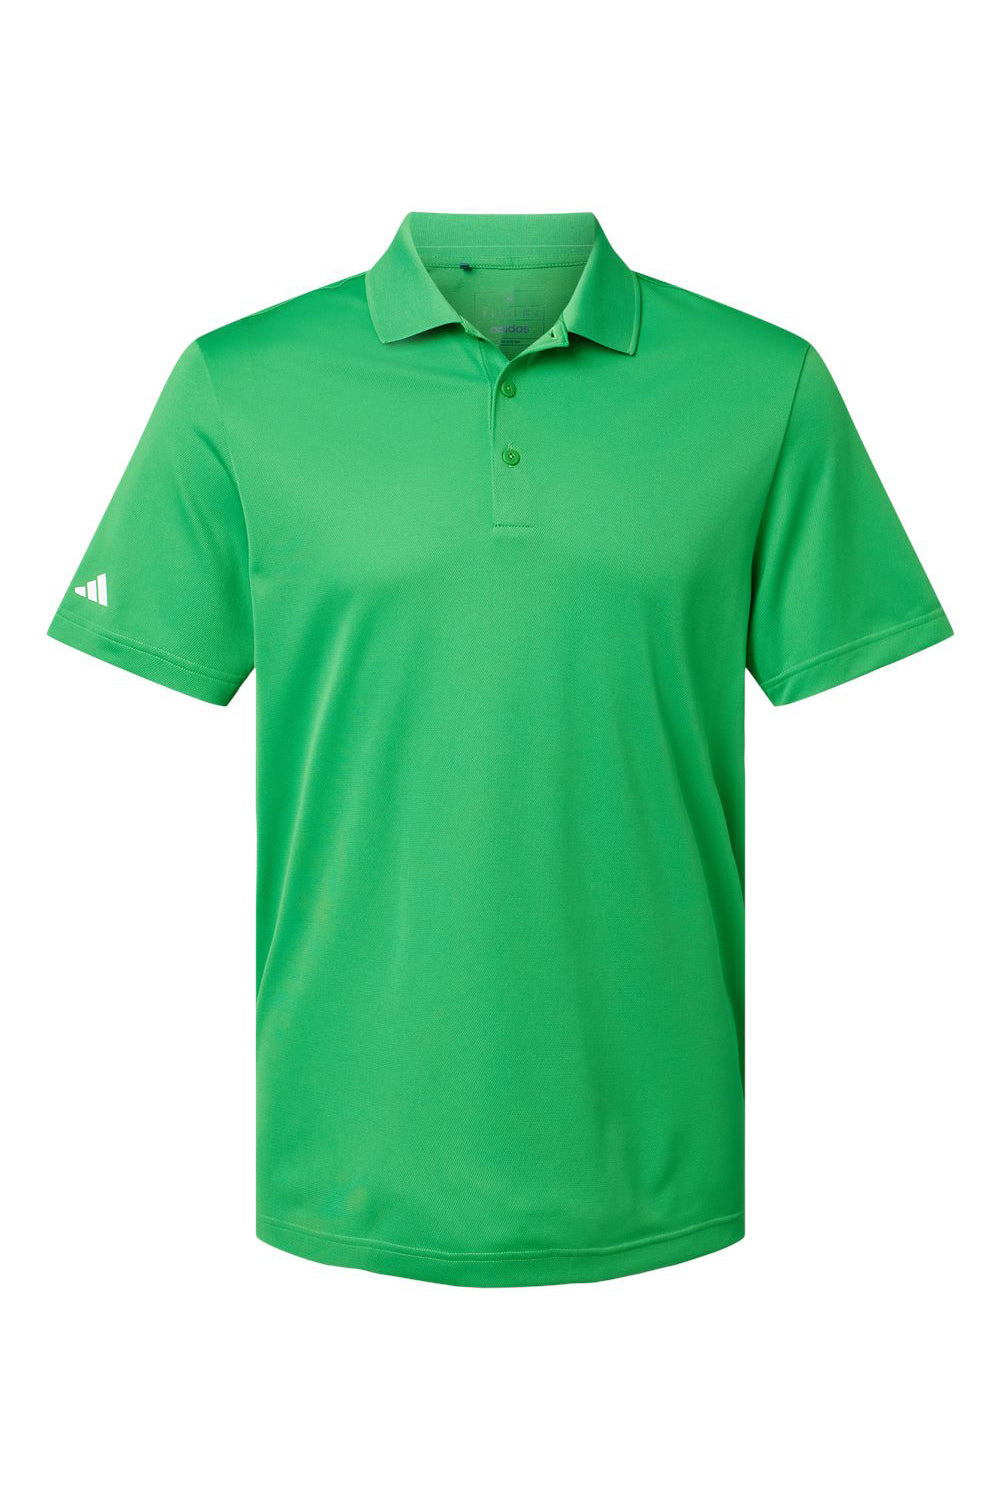 Adidas A430 Mens UV Protection Short Sleeve Polo Shirt Vivid Green Flat Front